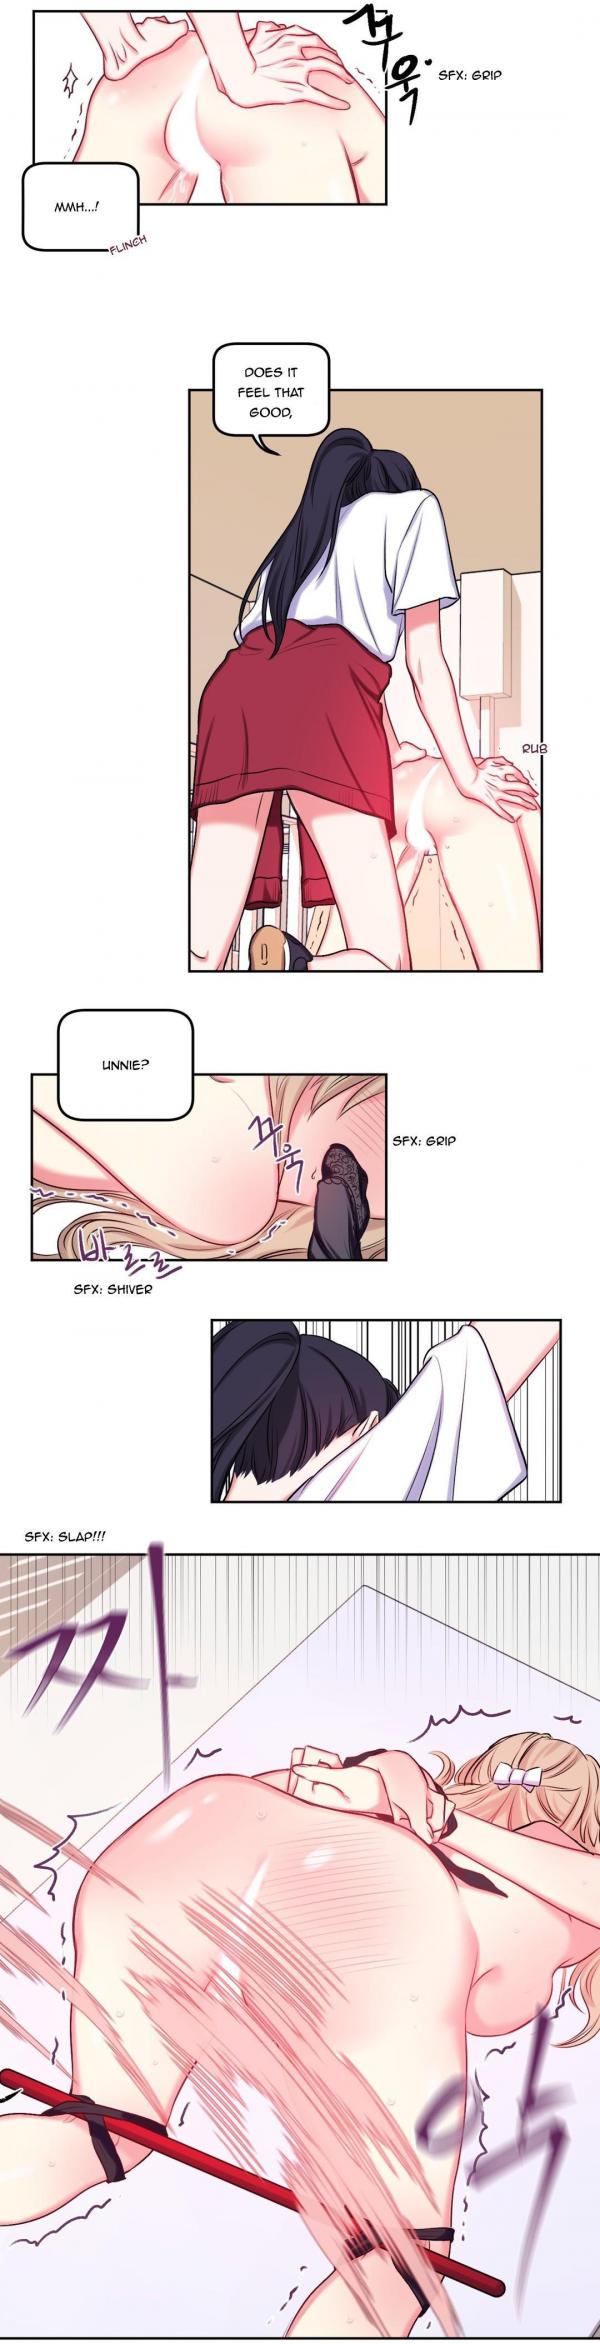 Yuri smut mangas